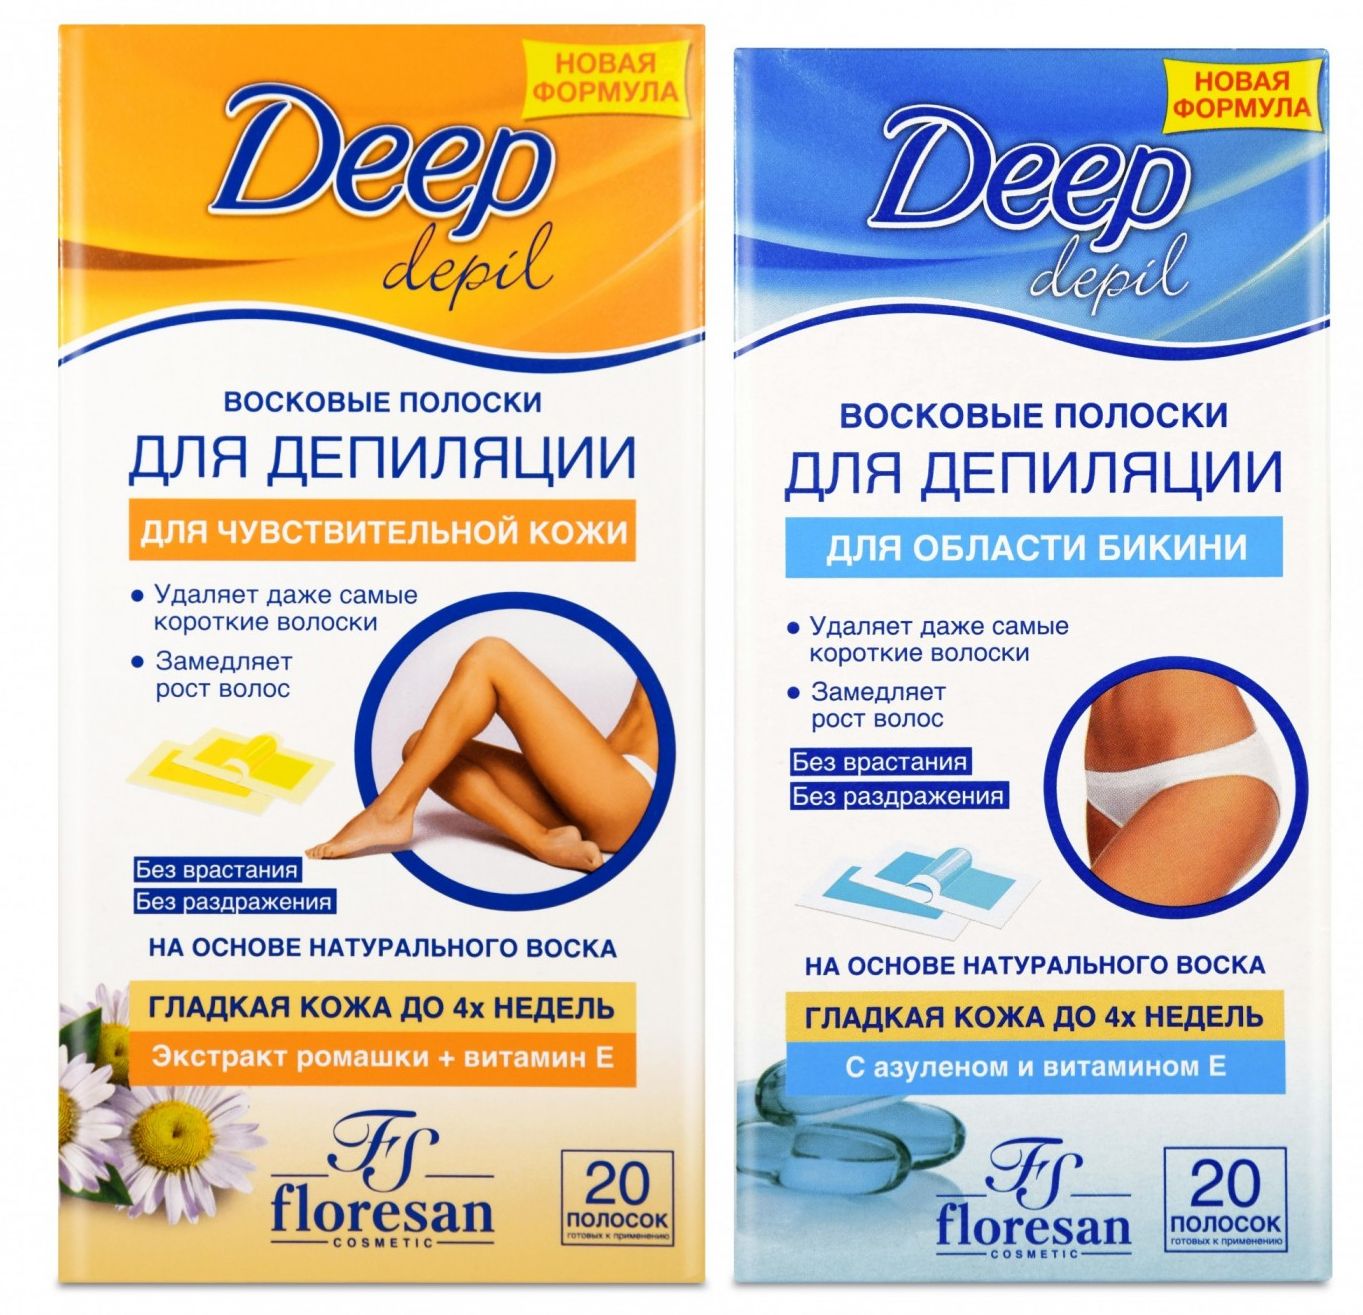 Восковые полоски Floresan Deep Depil для чувствительной кожи и области бикини 2 шт